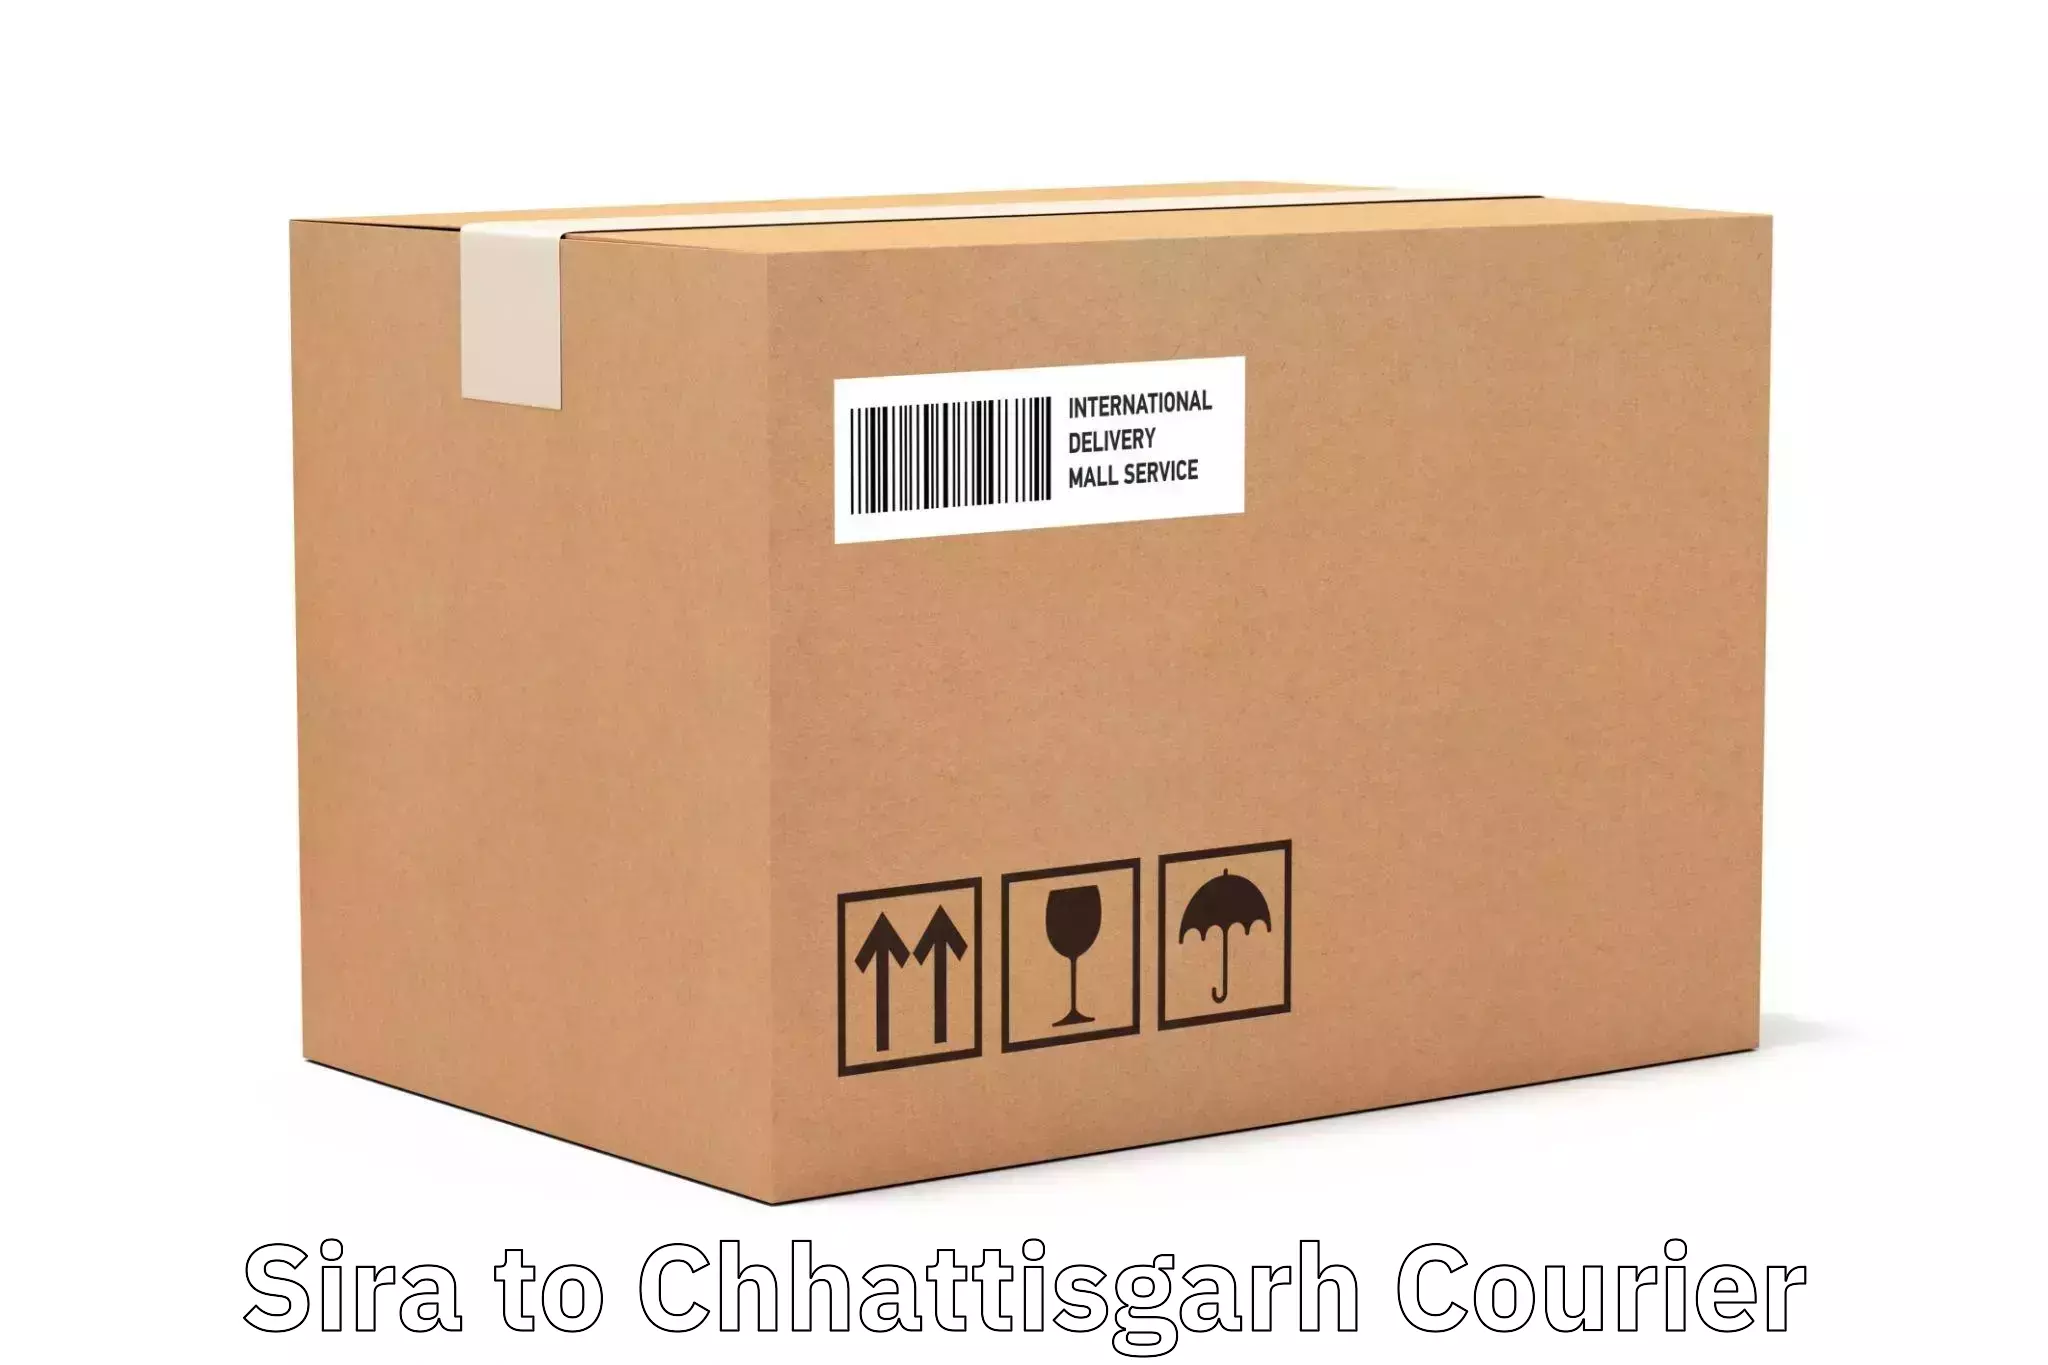 Cash on delivery service Sira to Bijapur Chhattisgarh